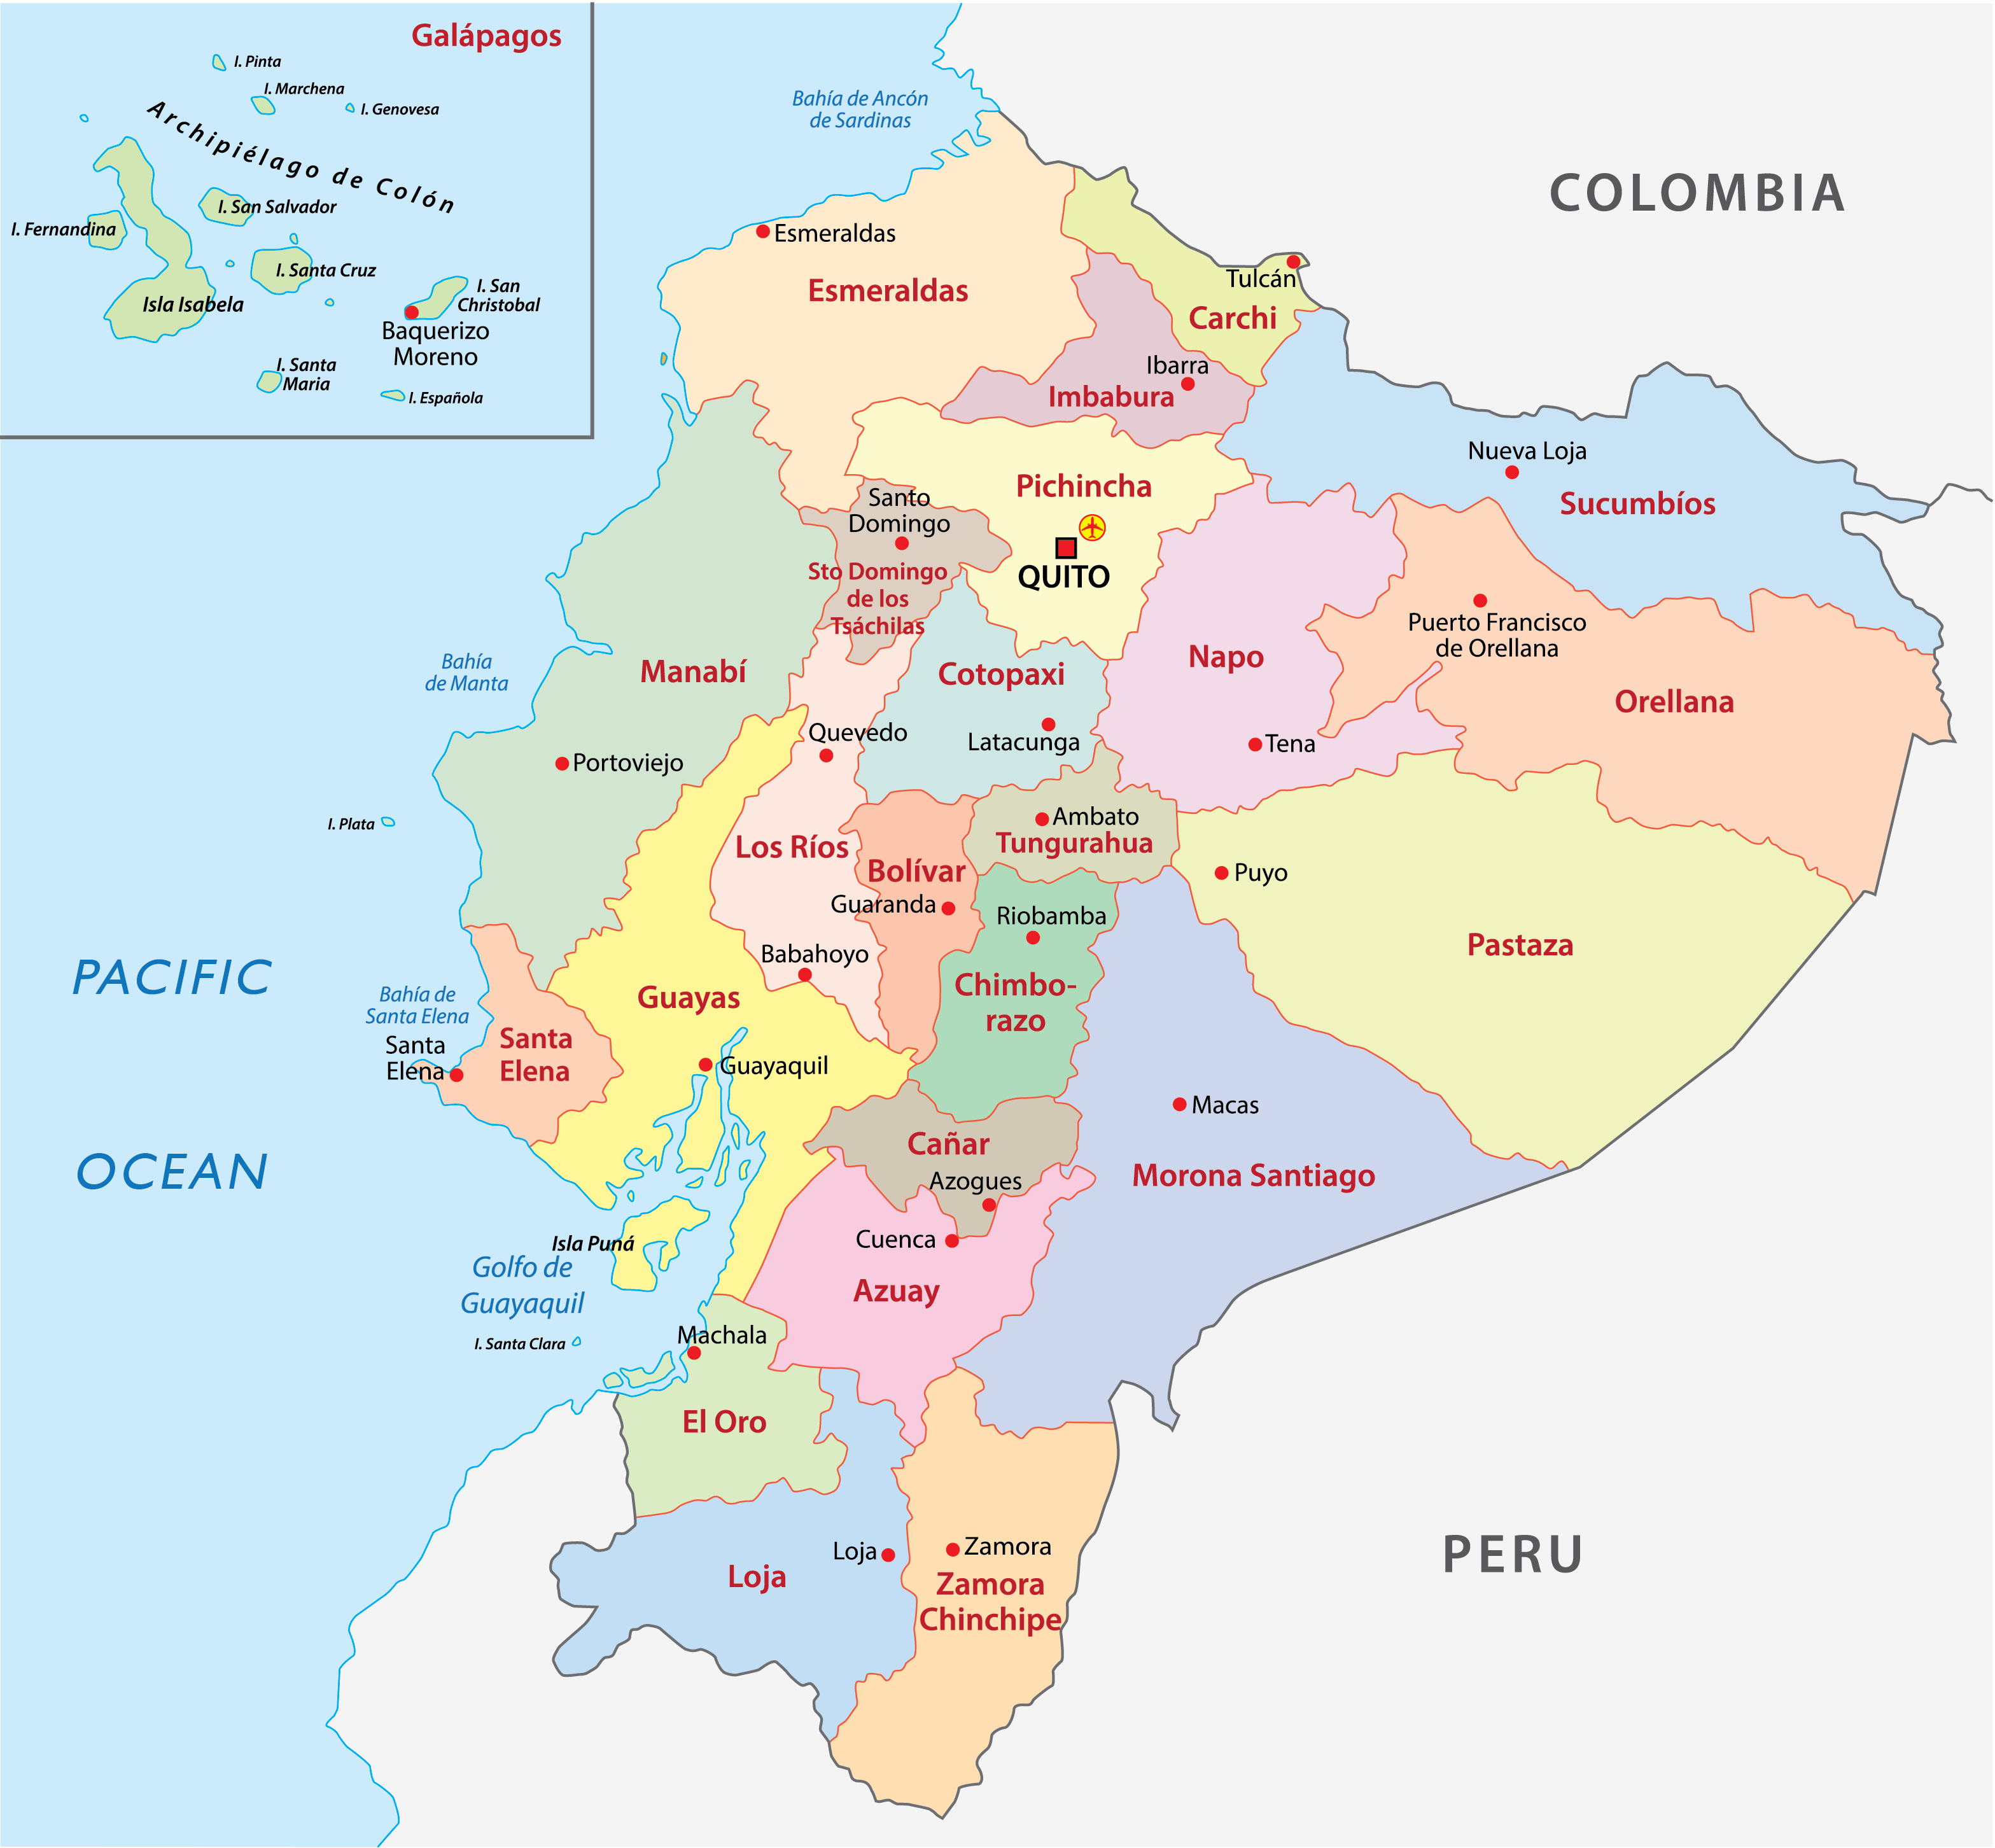 Ecuador Political Map